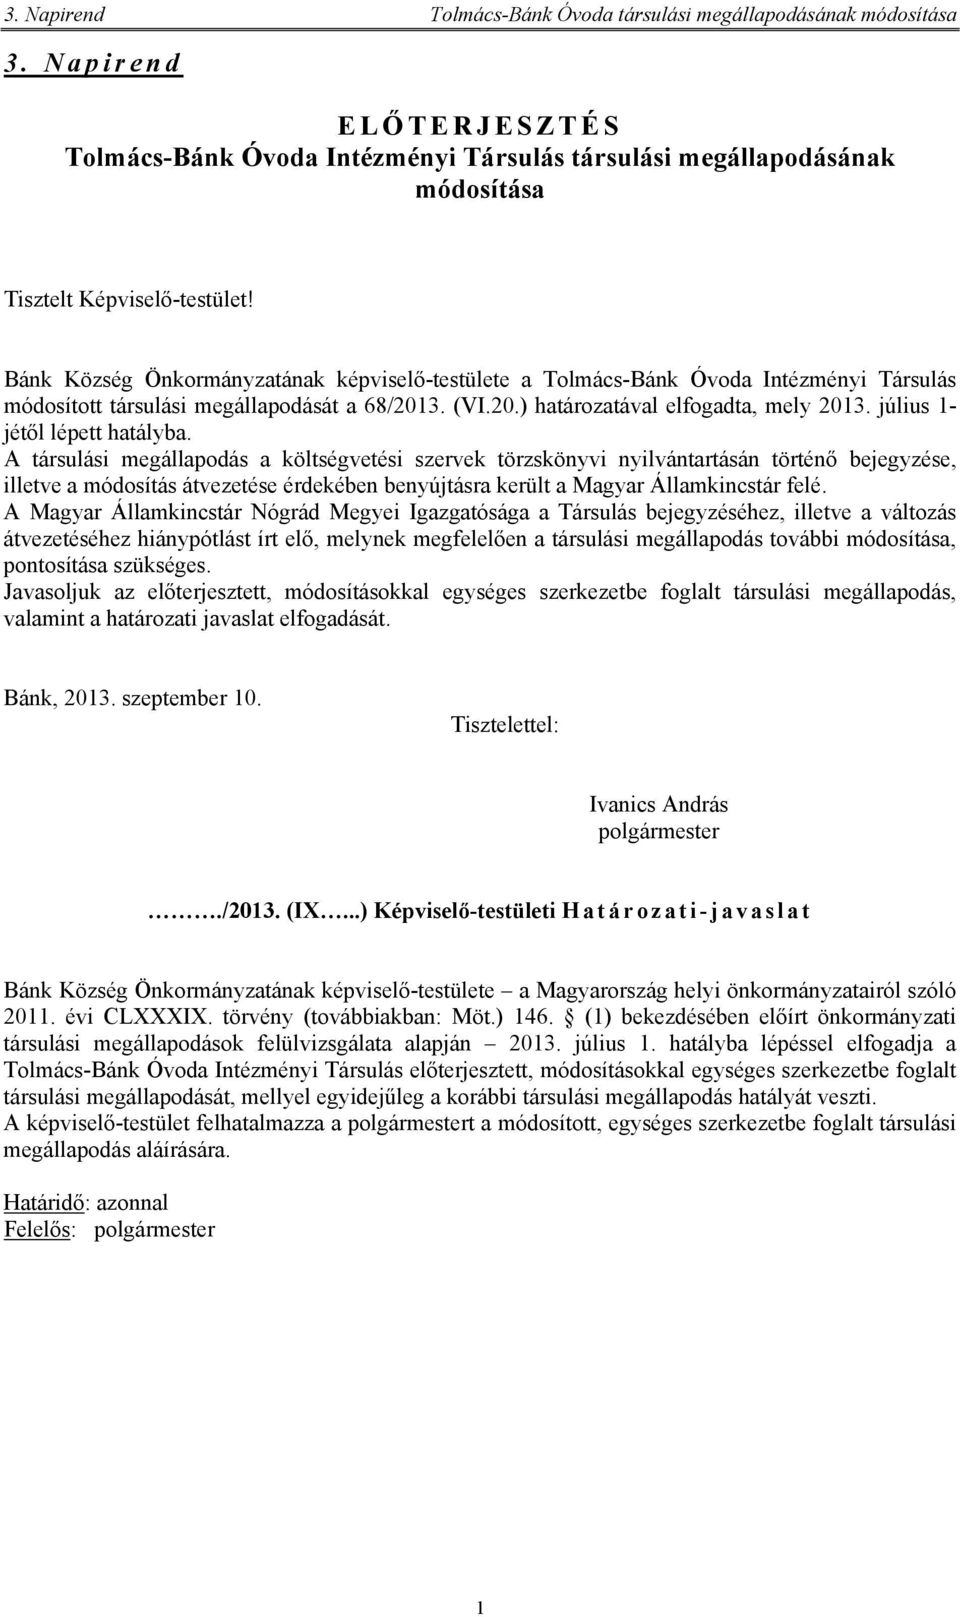 Bánk Község Önkormányzatának képviselő-testülete a Tolmács-Bánk Óvoda Intézményi Társulás módosított társulási megállapodását a 68/2013. (VI.20.) határozatával elfogadta, mely 2013.